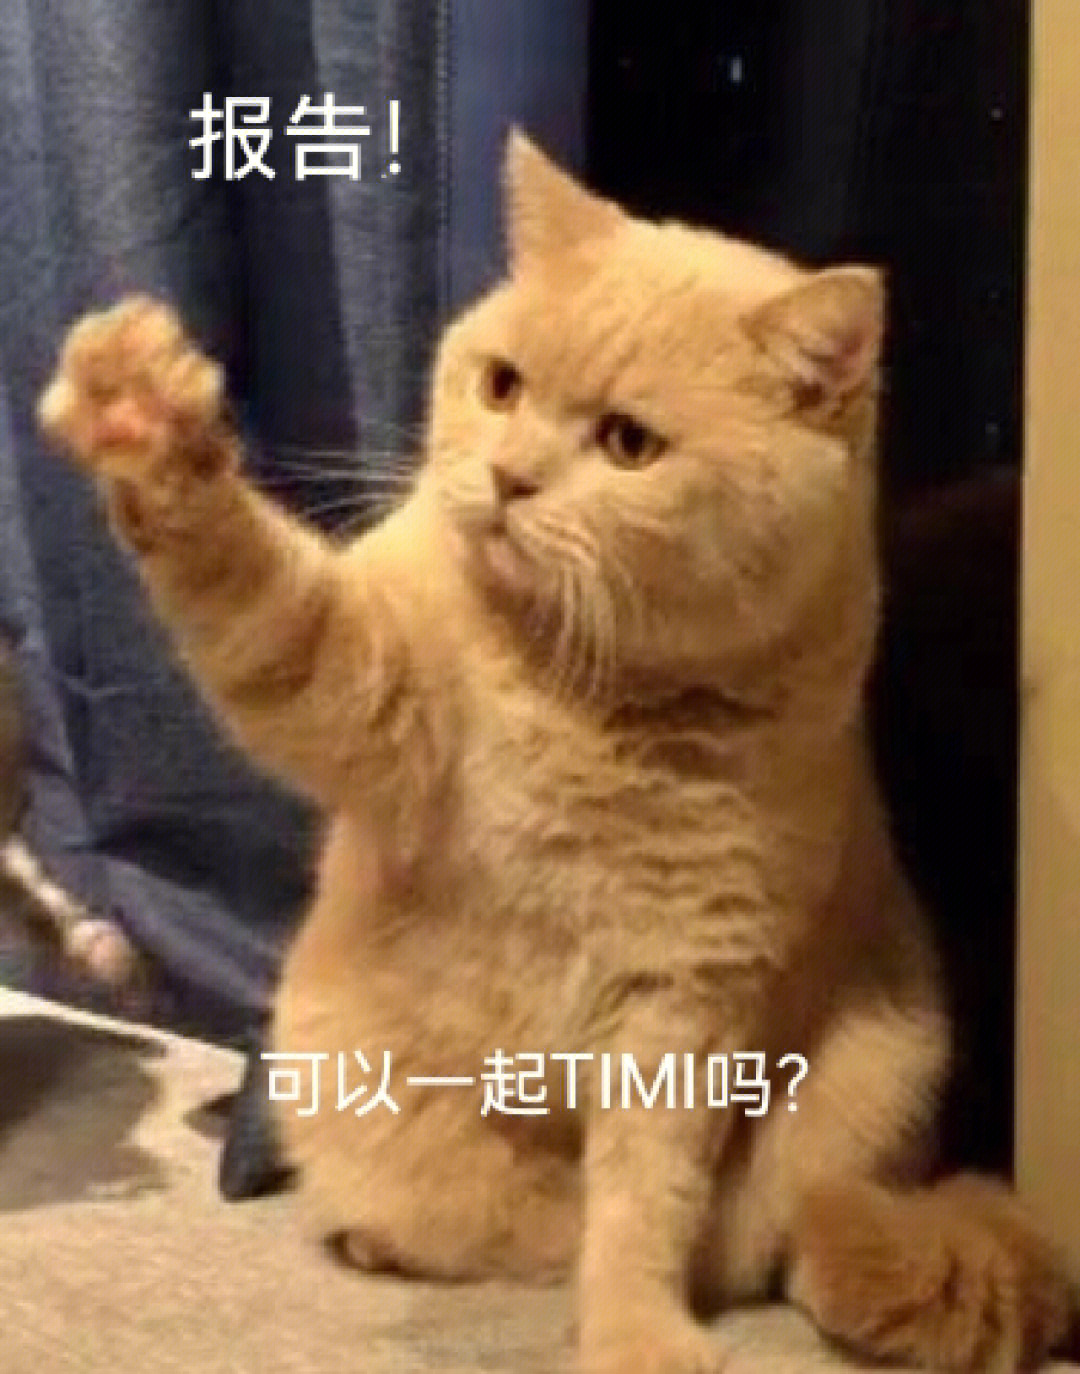 猫搓手手表情包图片